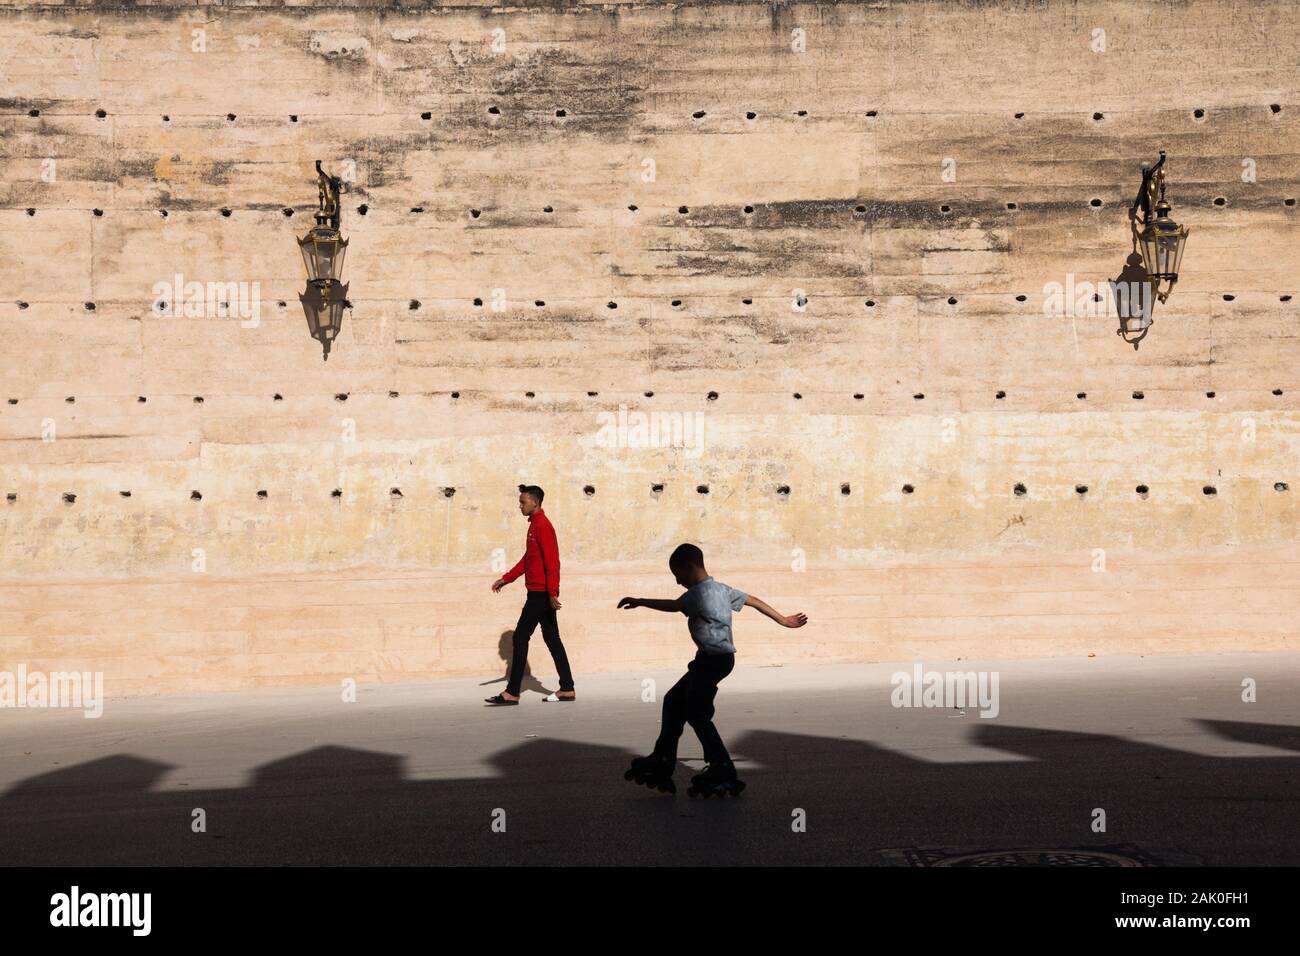 Un peatón, un chico en patines y la tierra apisonada de las murallas de la ciudad de Fez (fez) con visible la sombra de la pared opuesta, Marruecos Foto de stock